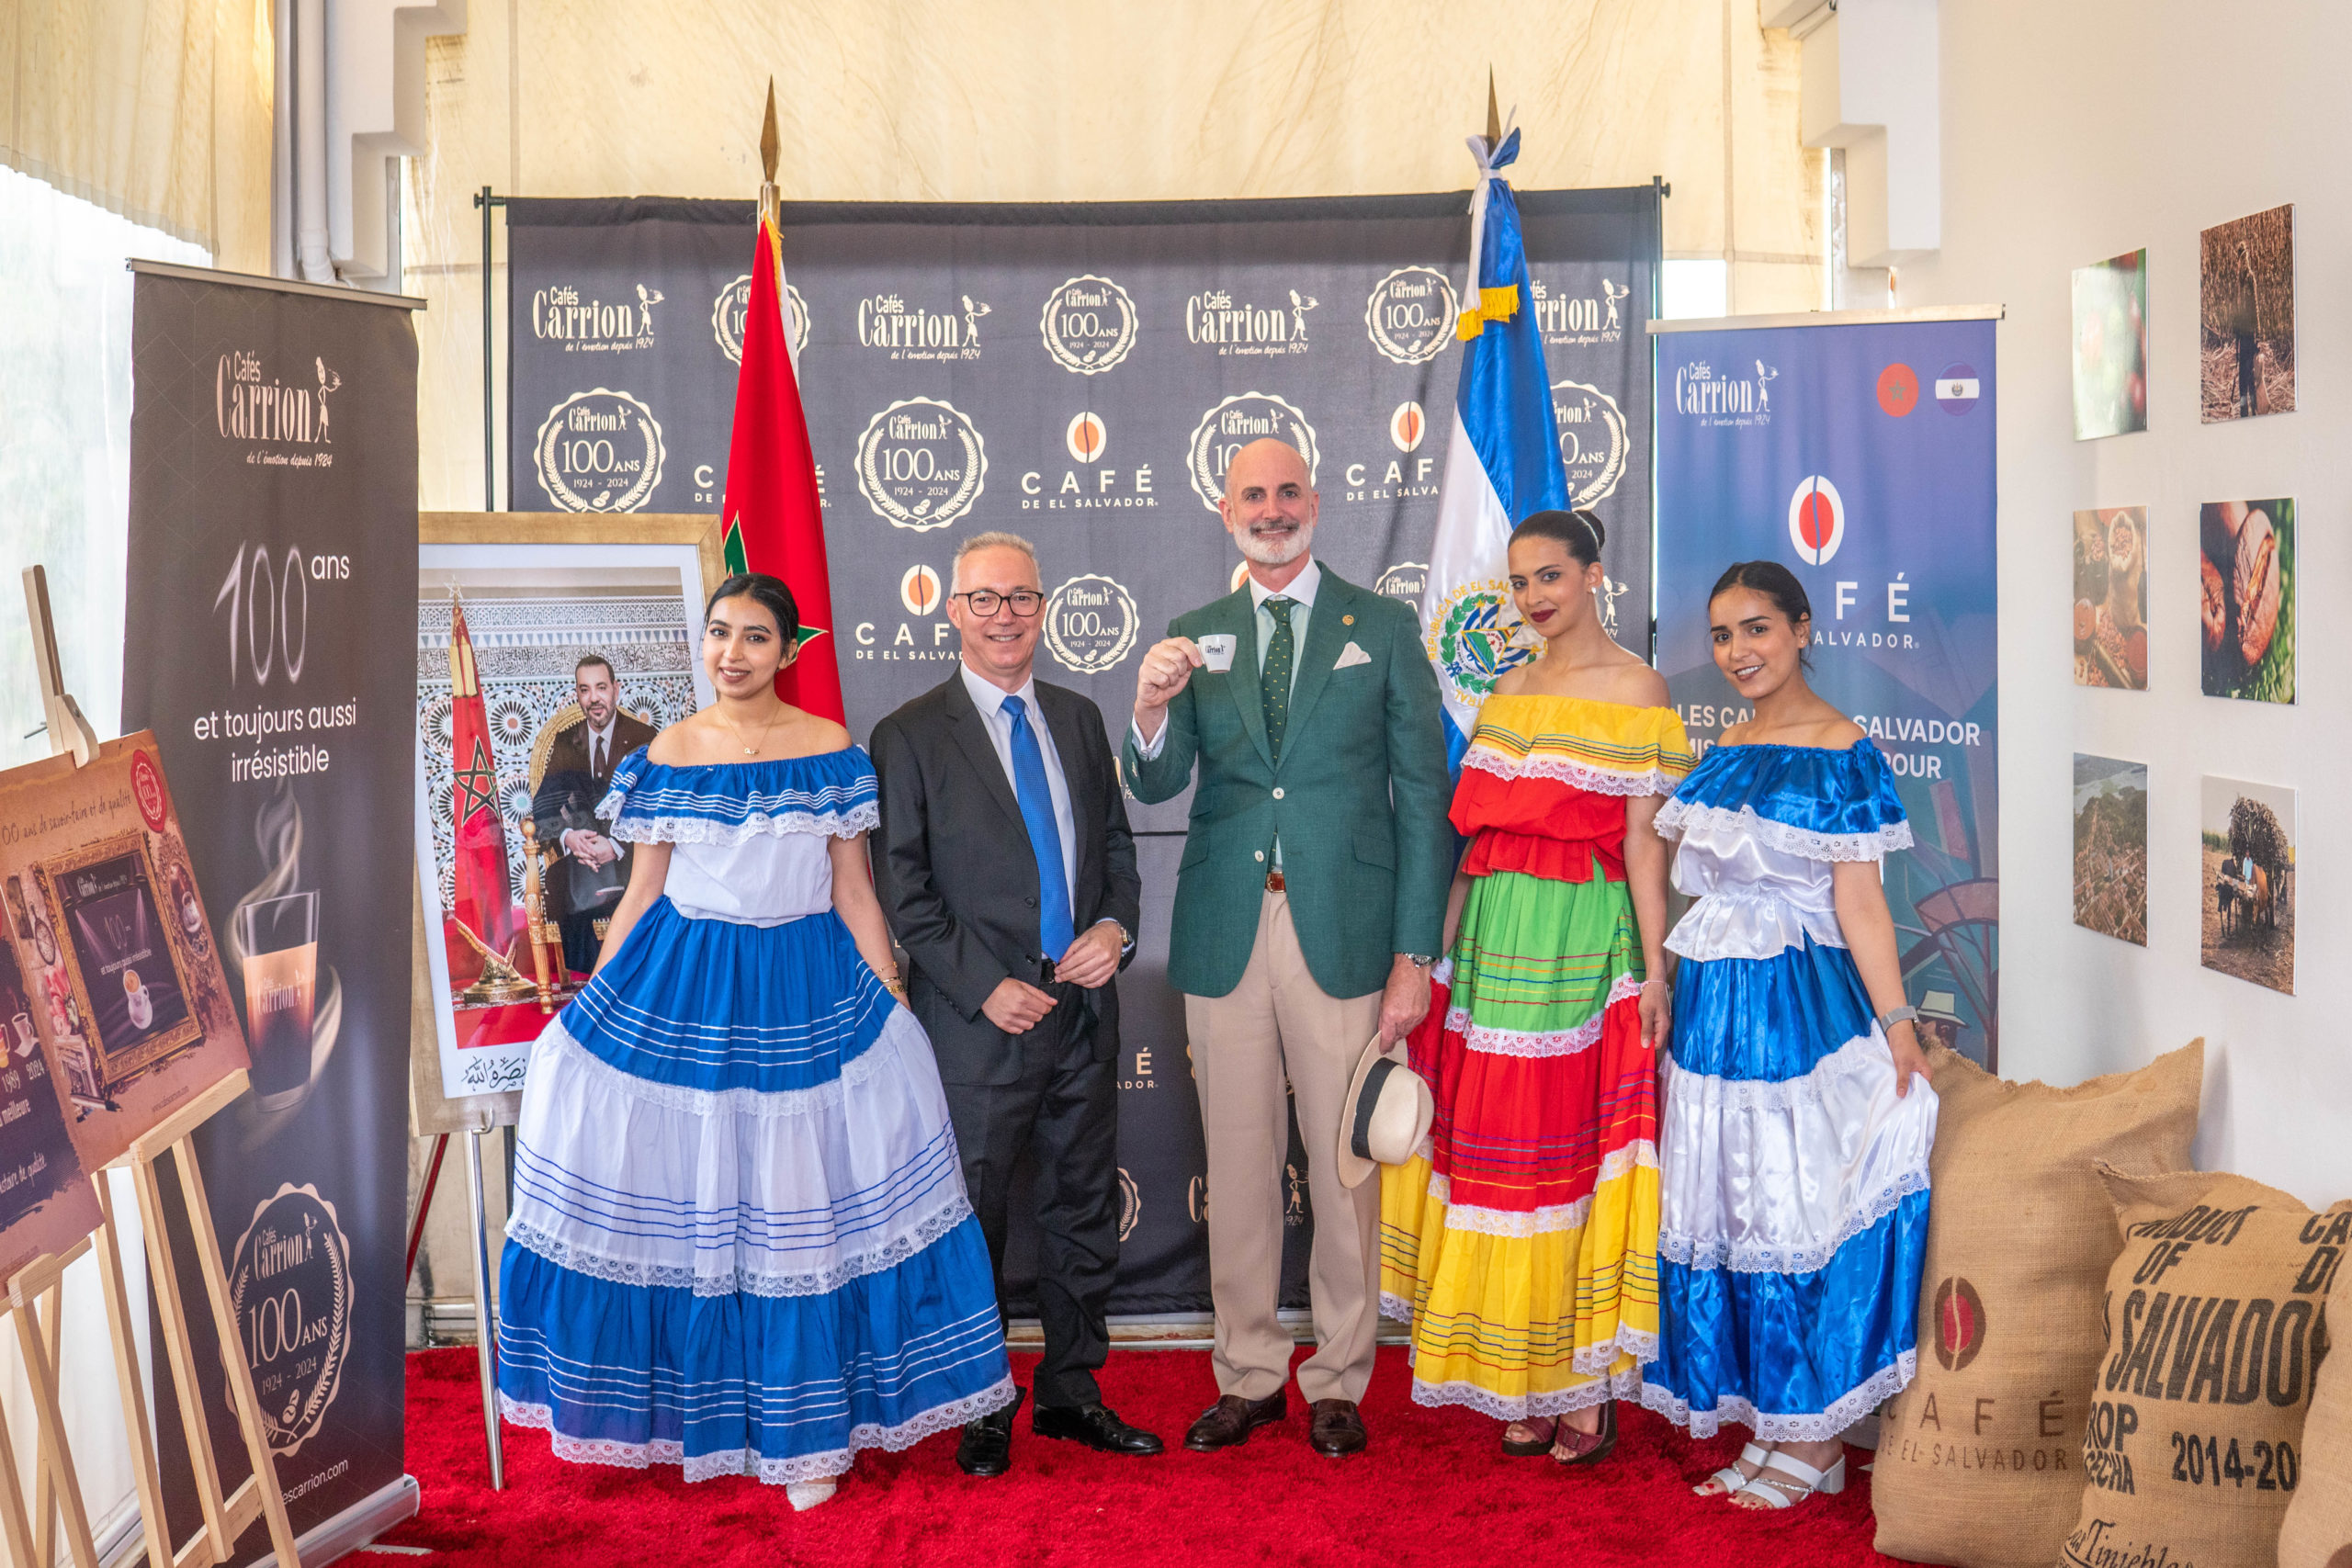 Les cafés d’El Salvador mis à l’honneur pour les 100 ans des Cafés Carrion